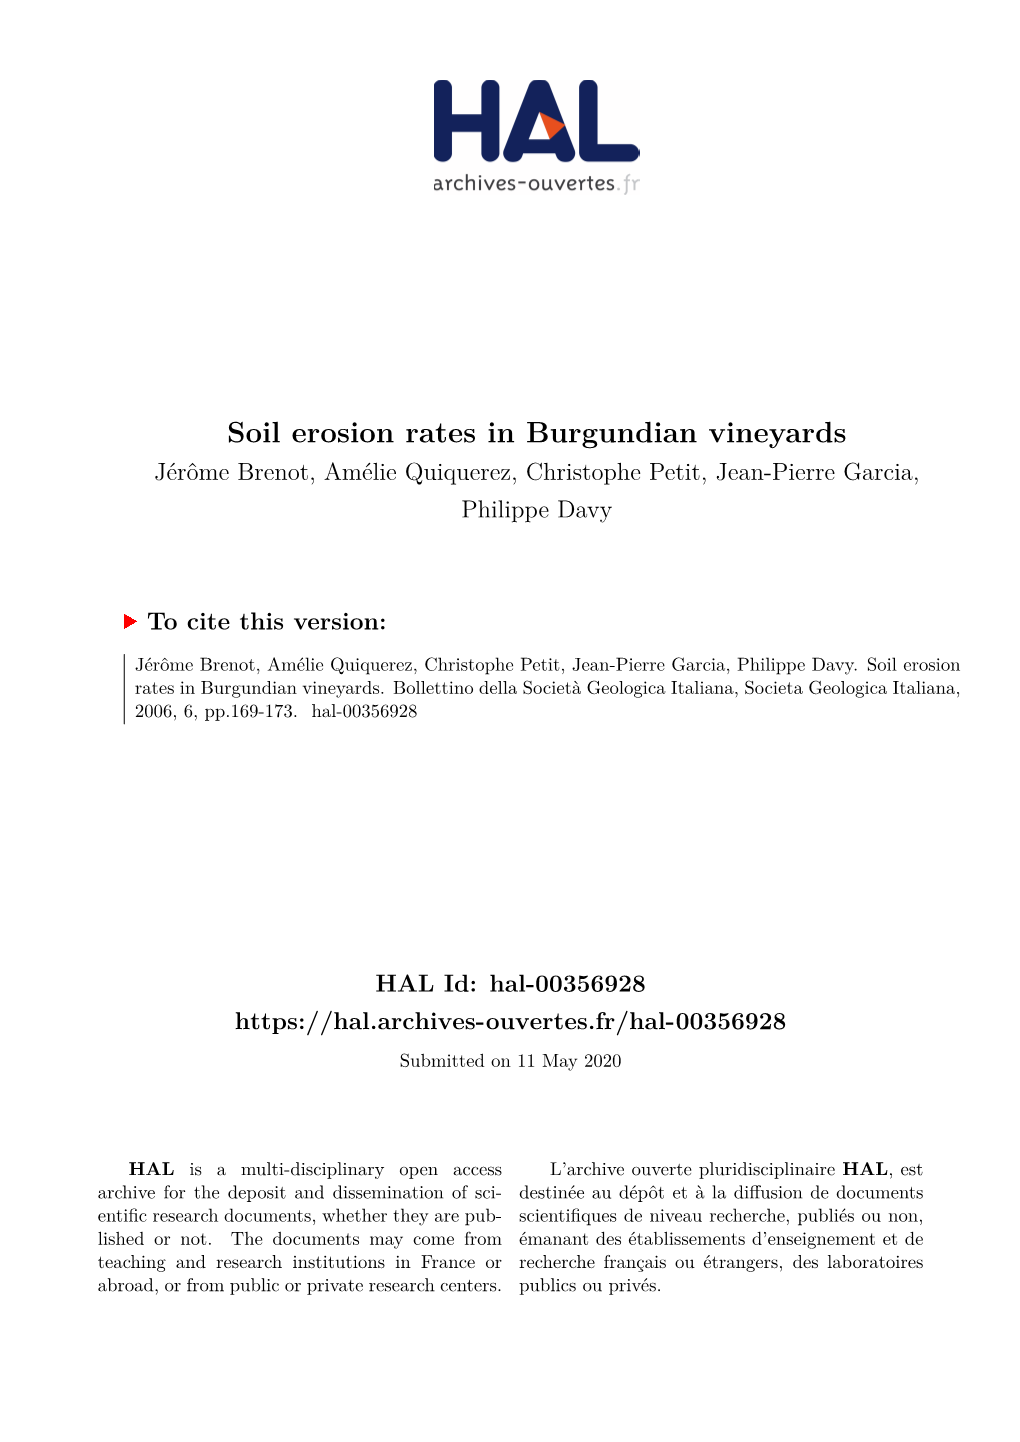 Soil Erosion Rates in Burgundian Vineyards Jérôme Brenot, Amélie Quiquerez, Christophe Petit, Jean-Pierre Garcia, Philippe Davy